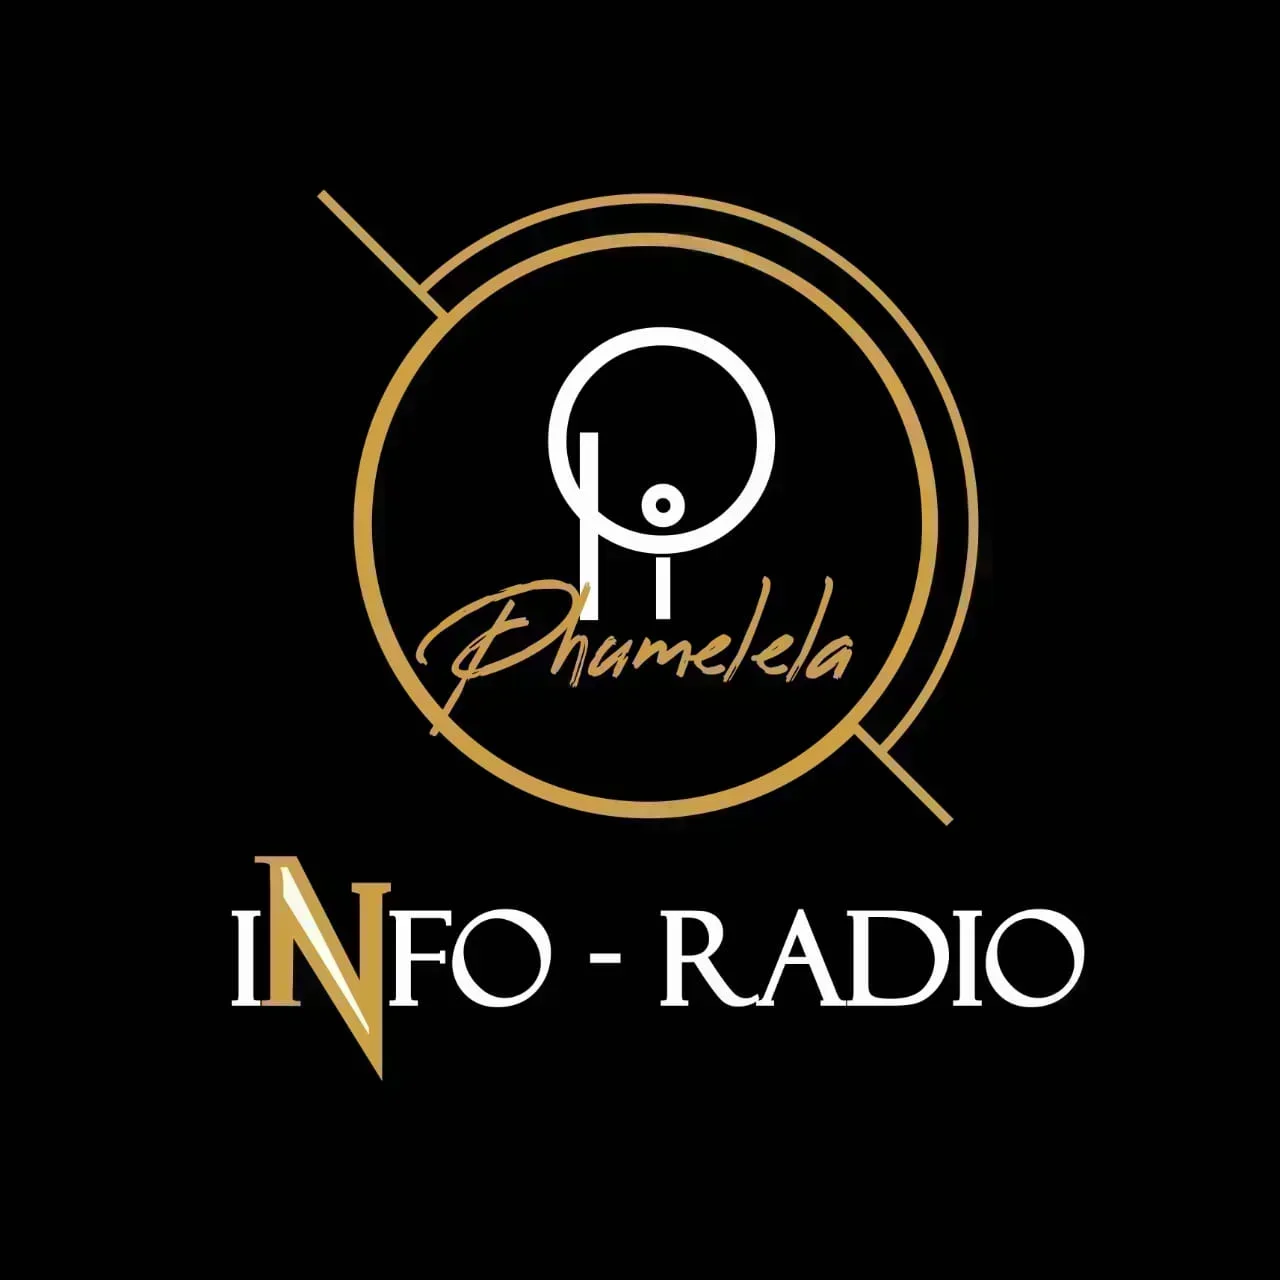 Phumelela Info Radio